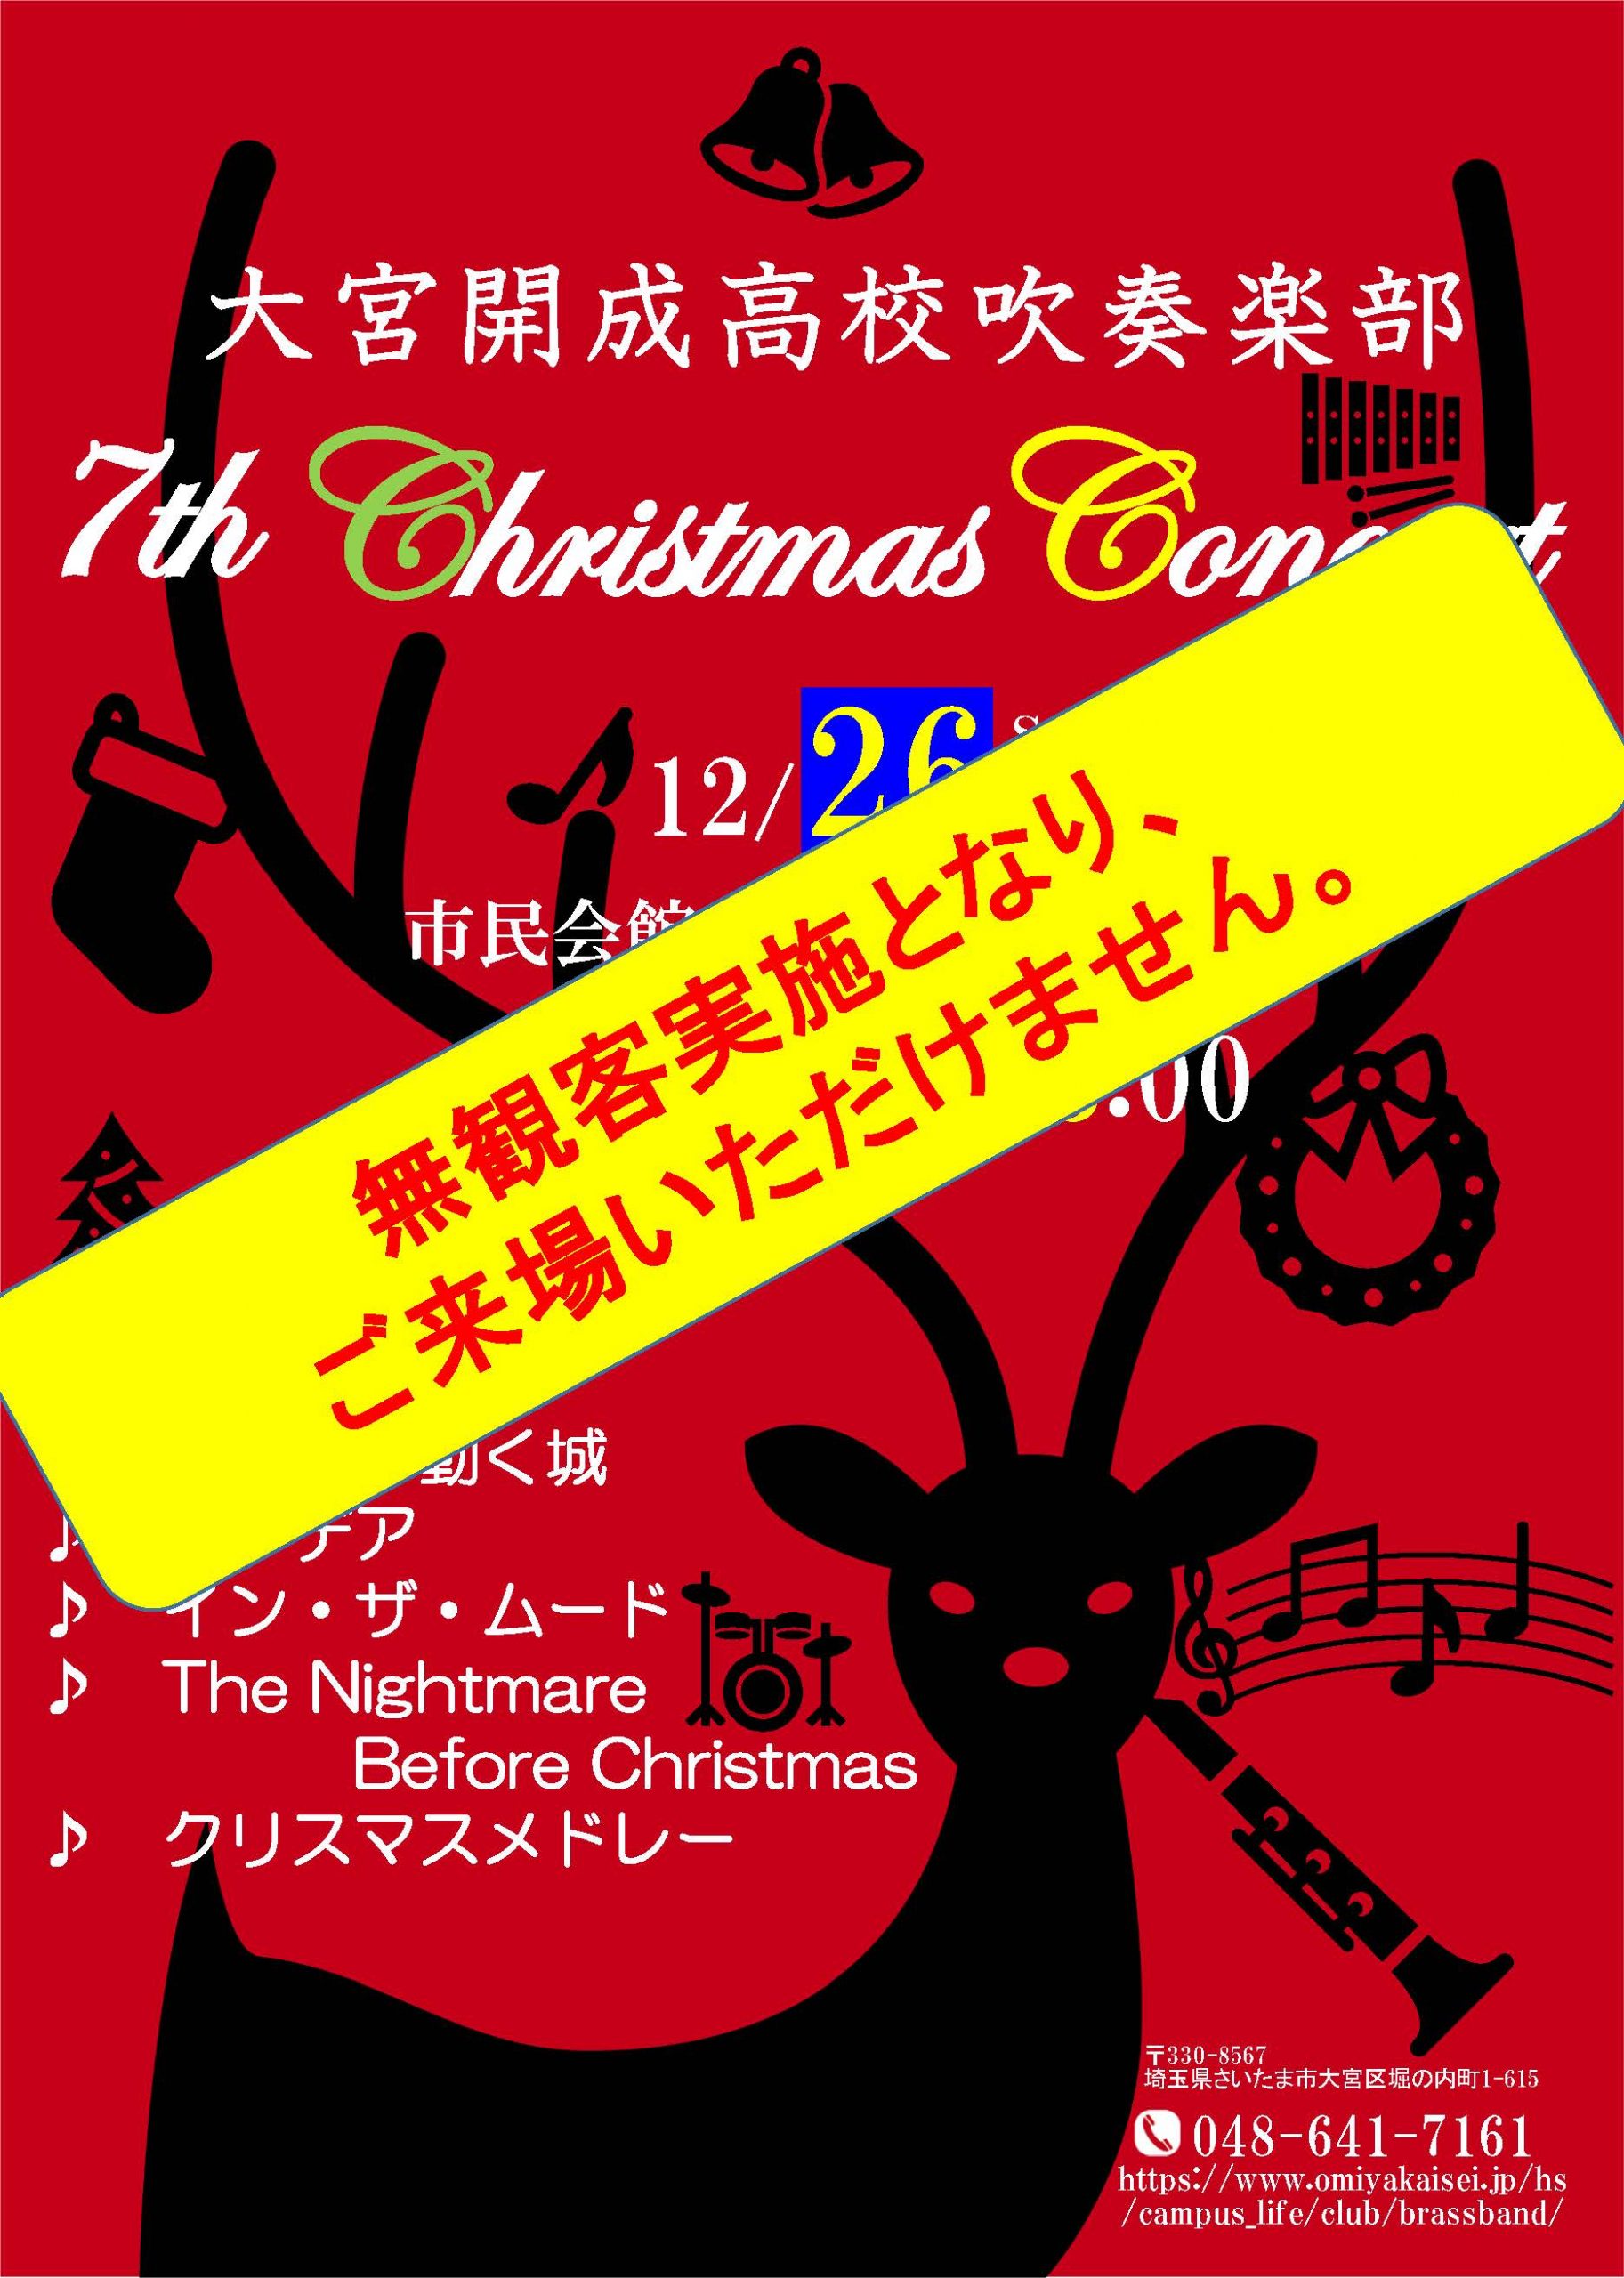 【高校吹奏楽部】第７回クリスマスコンサートについて(お詫び)